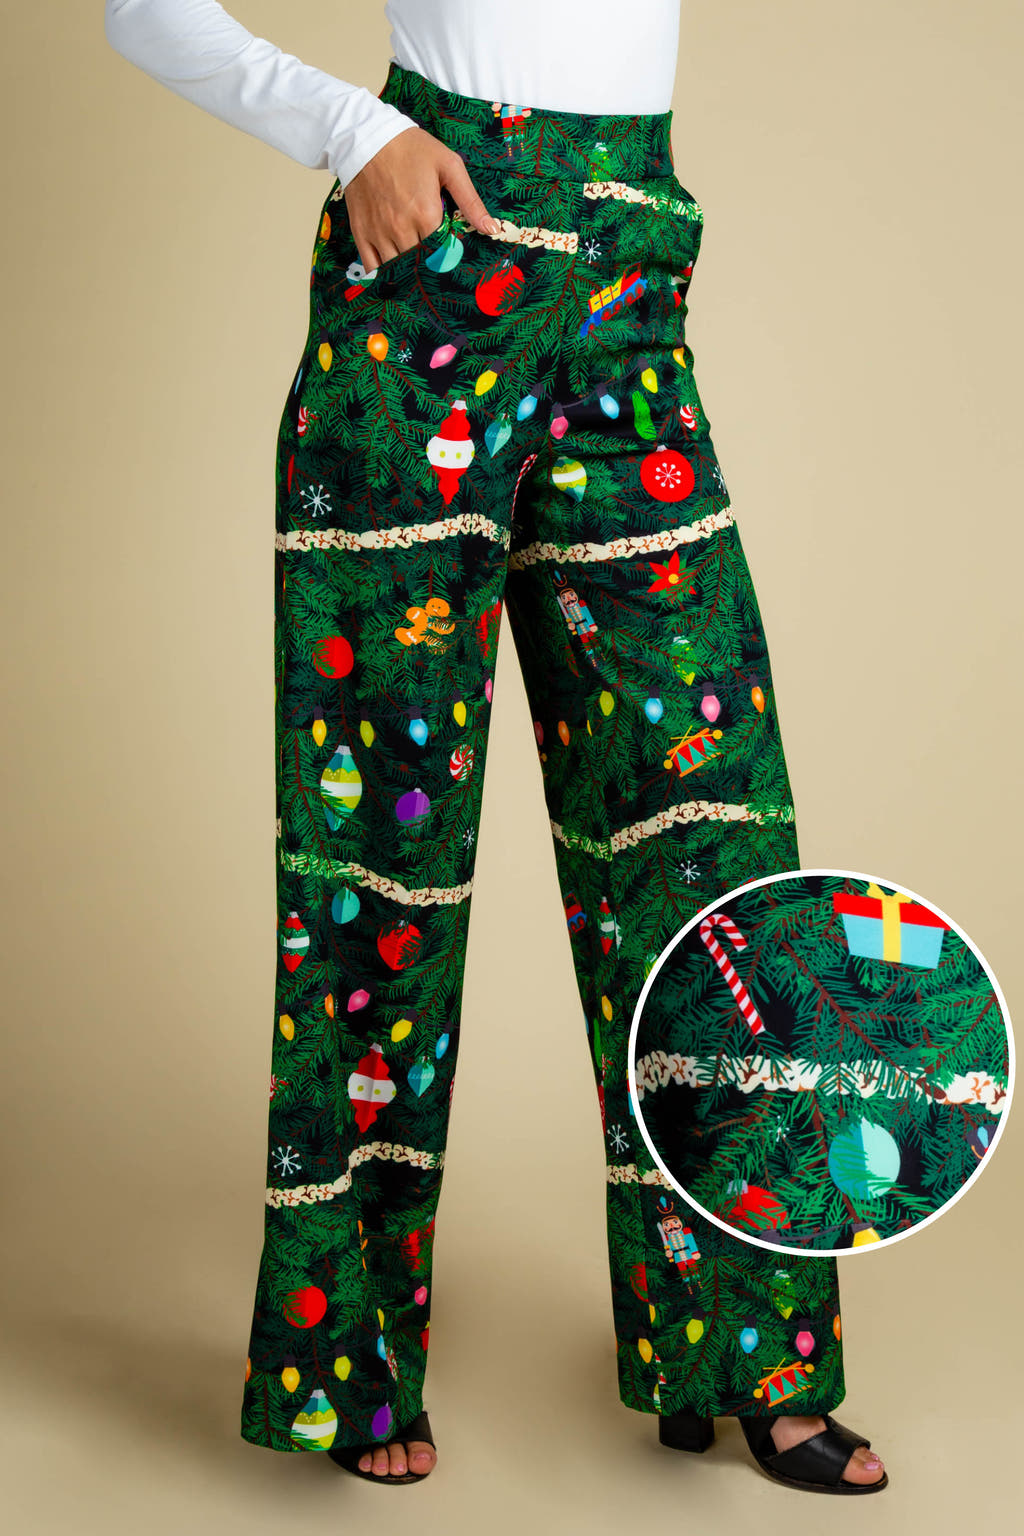 The Christmas Tree Camo | Womens Christmas Tree Print Pant